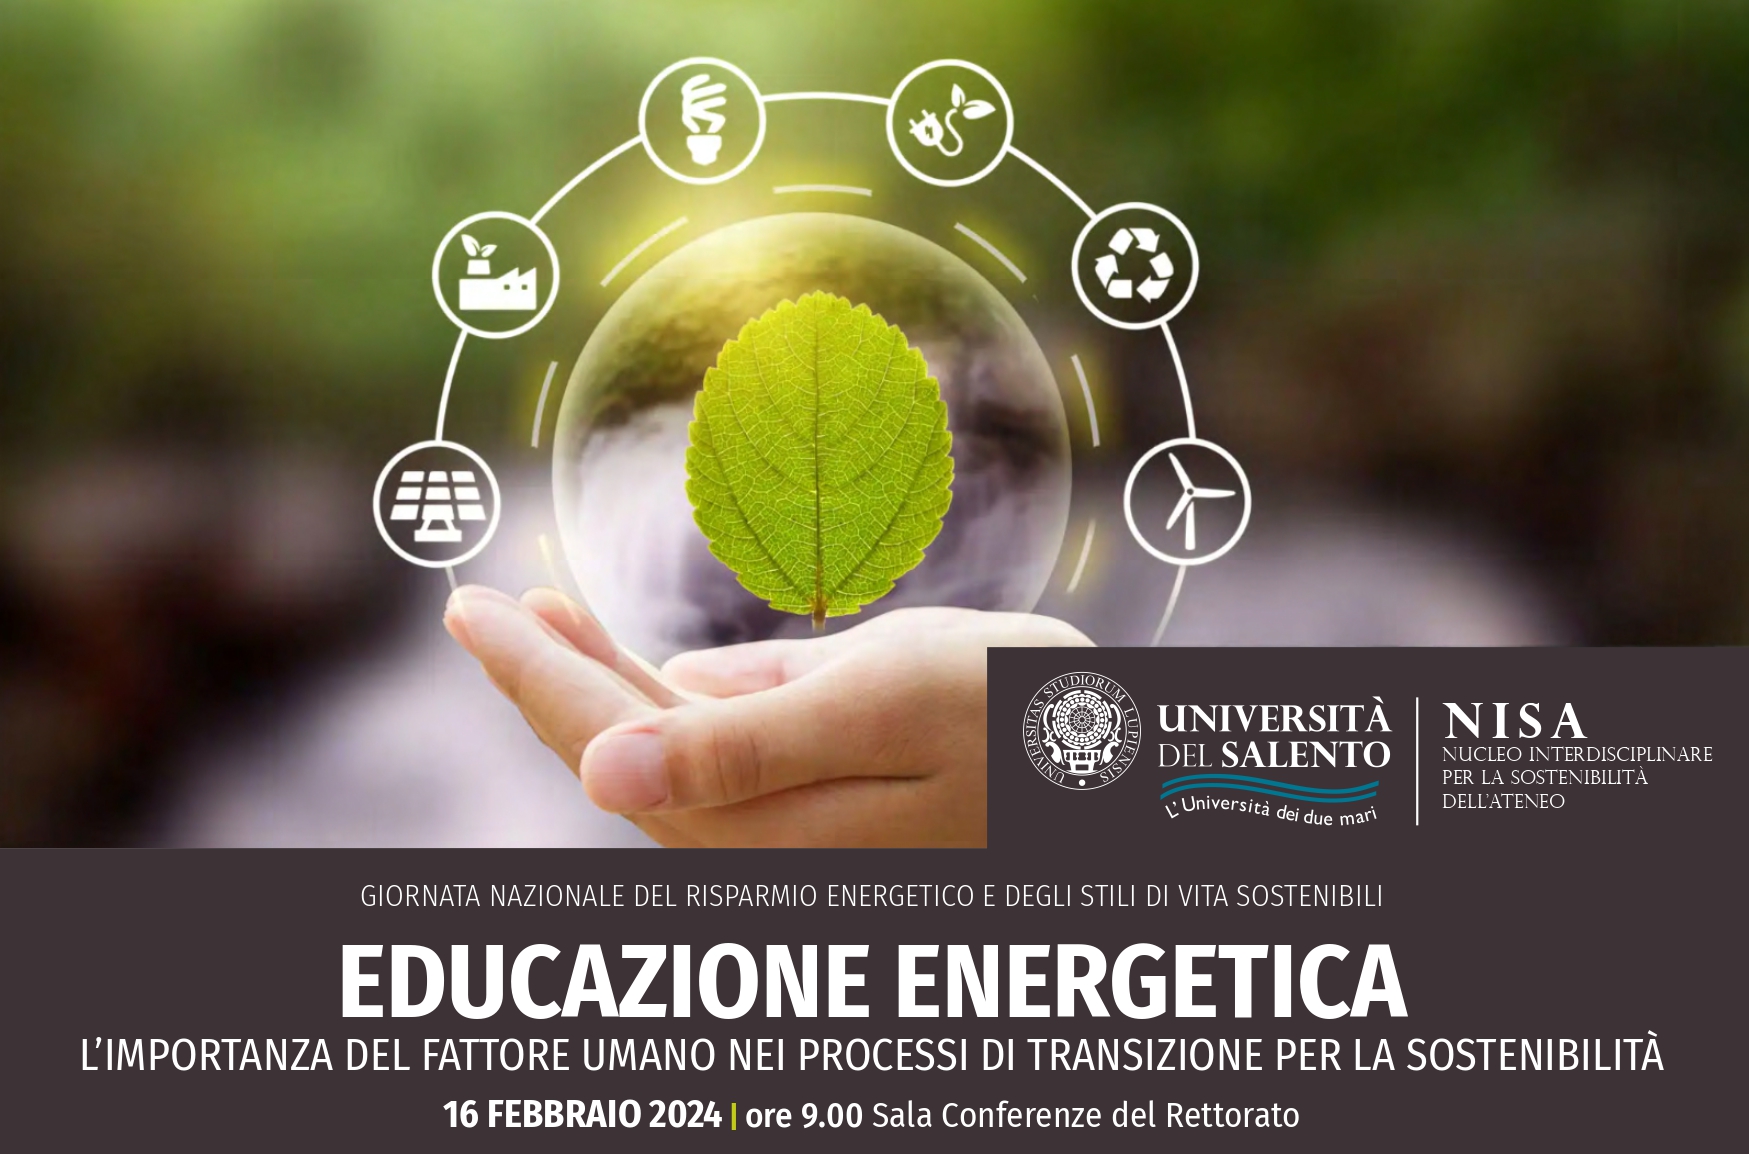 La locandina del convegno "Educazione Energetica - l’importanza del fattore umano nei processi di transizione per la sostenibilità" con i loghi dell’Università del Salento e del NISA - Nucleo interdisciplinare per la sostenibilità dell'ateneo 